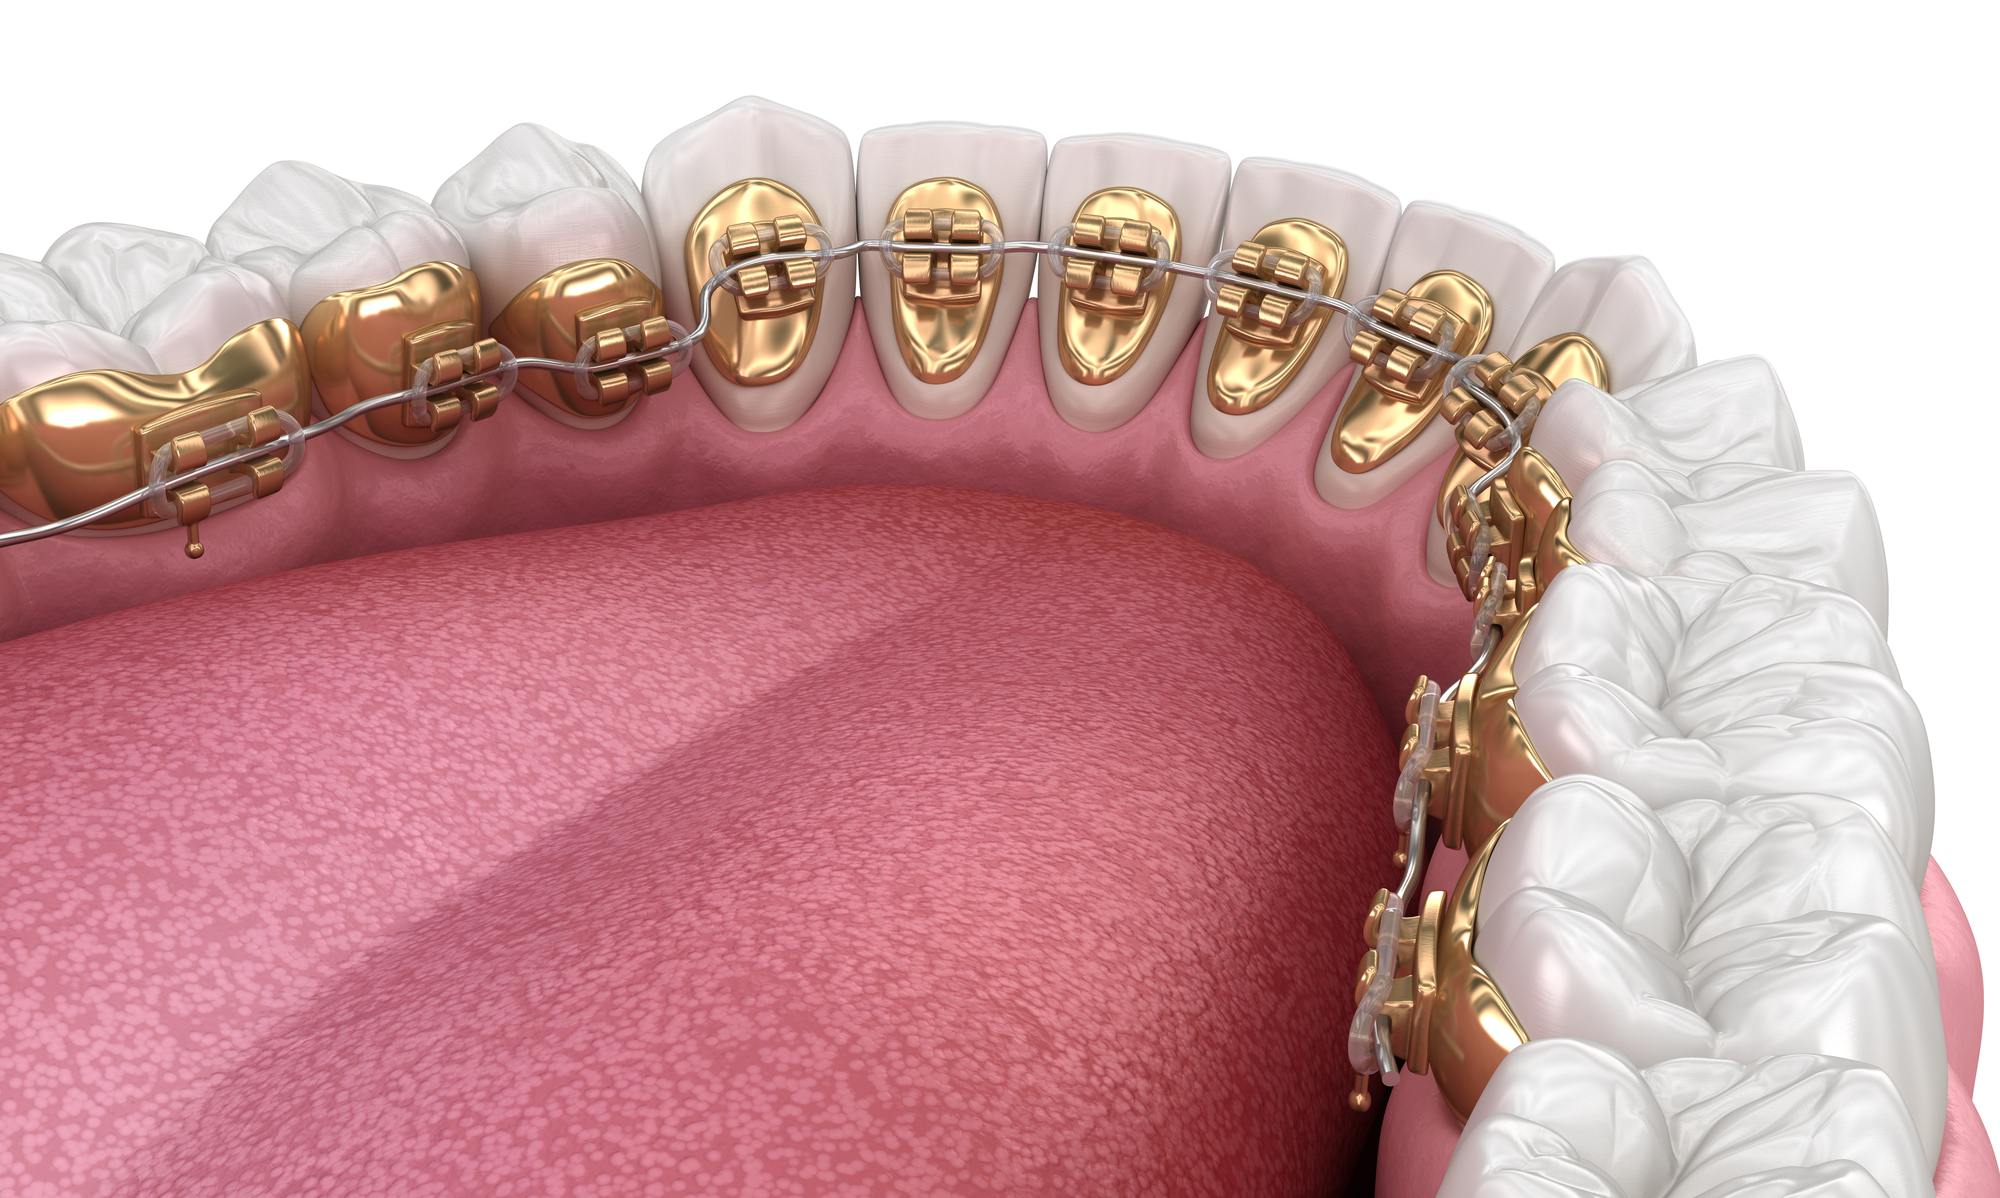 יישור שיניים פנימי - גשר המתוקן בחלק הפנימי של השיניים